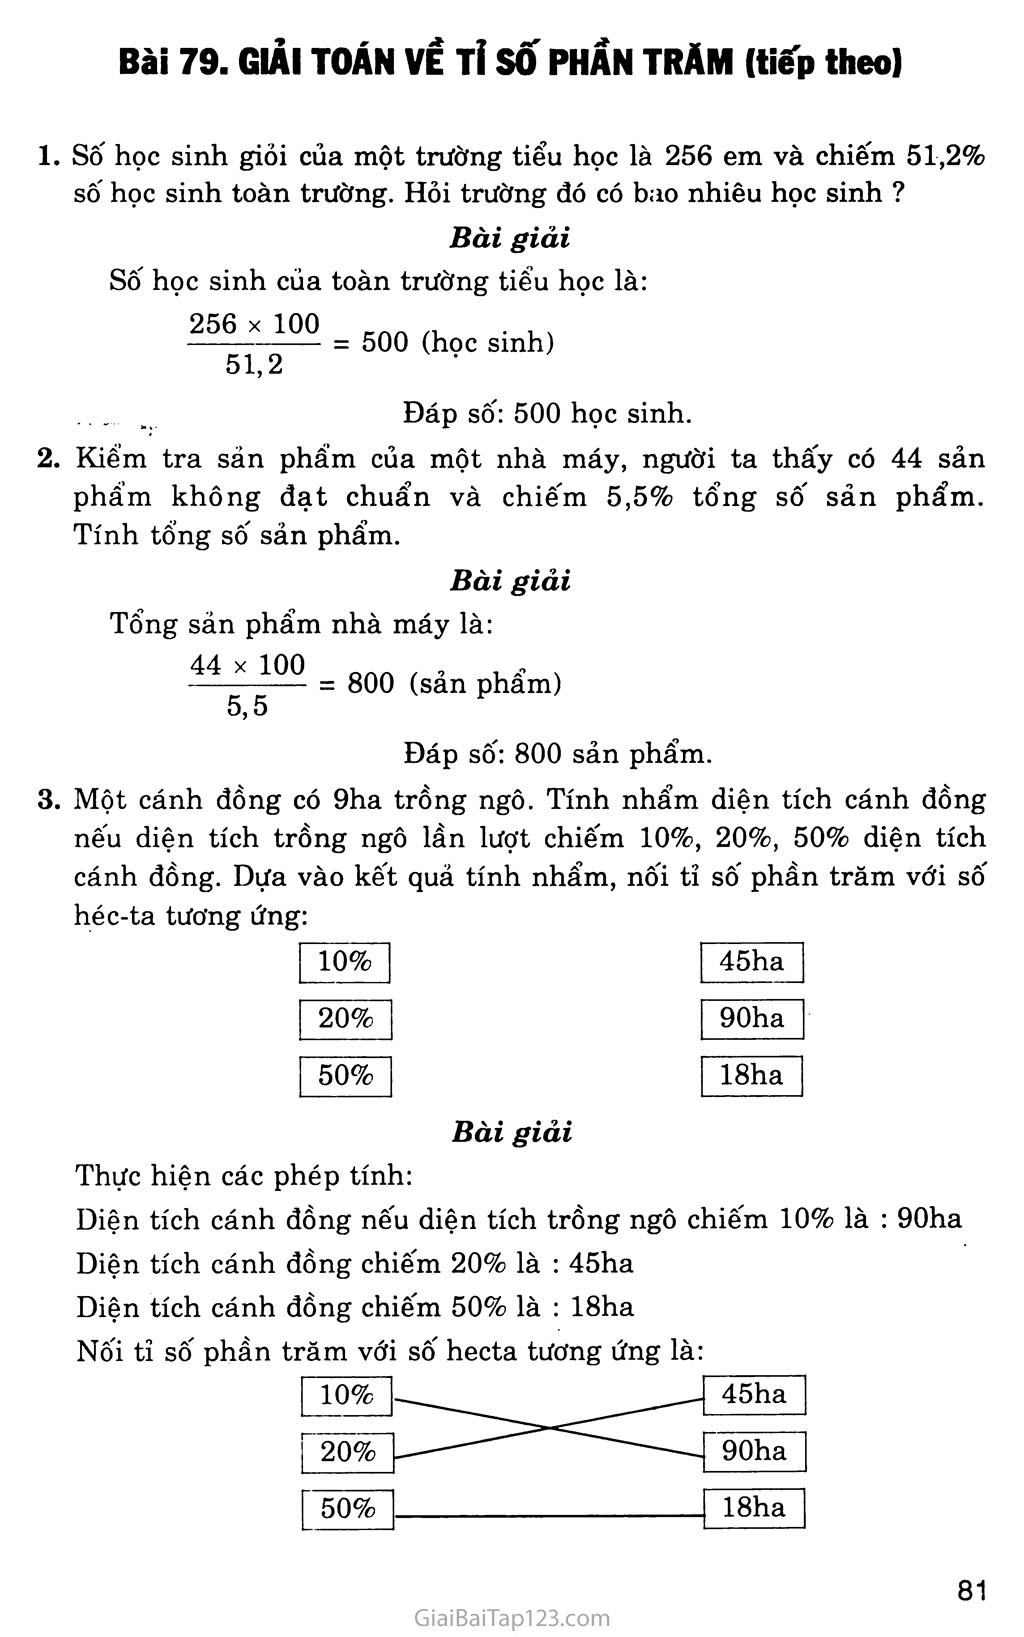 Bài 79: Giải toán về tỉ số phần trăm (tiếp theo) trang 1